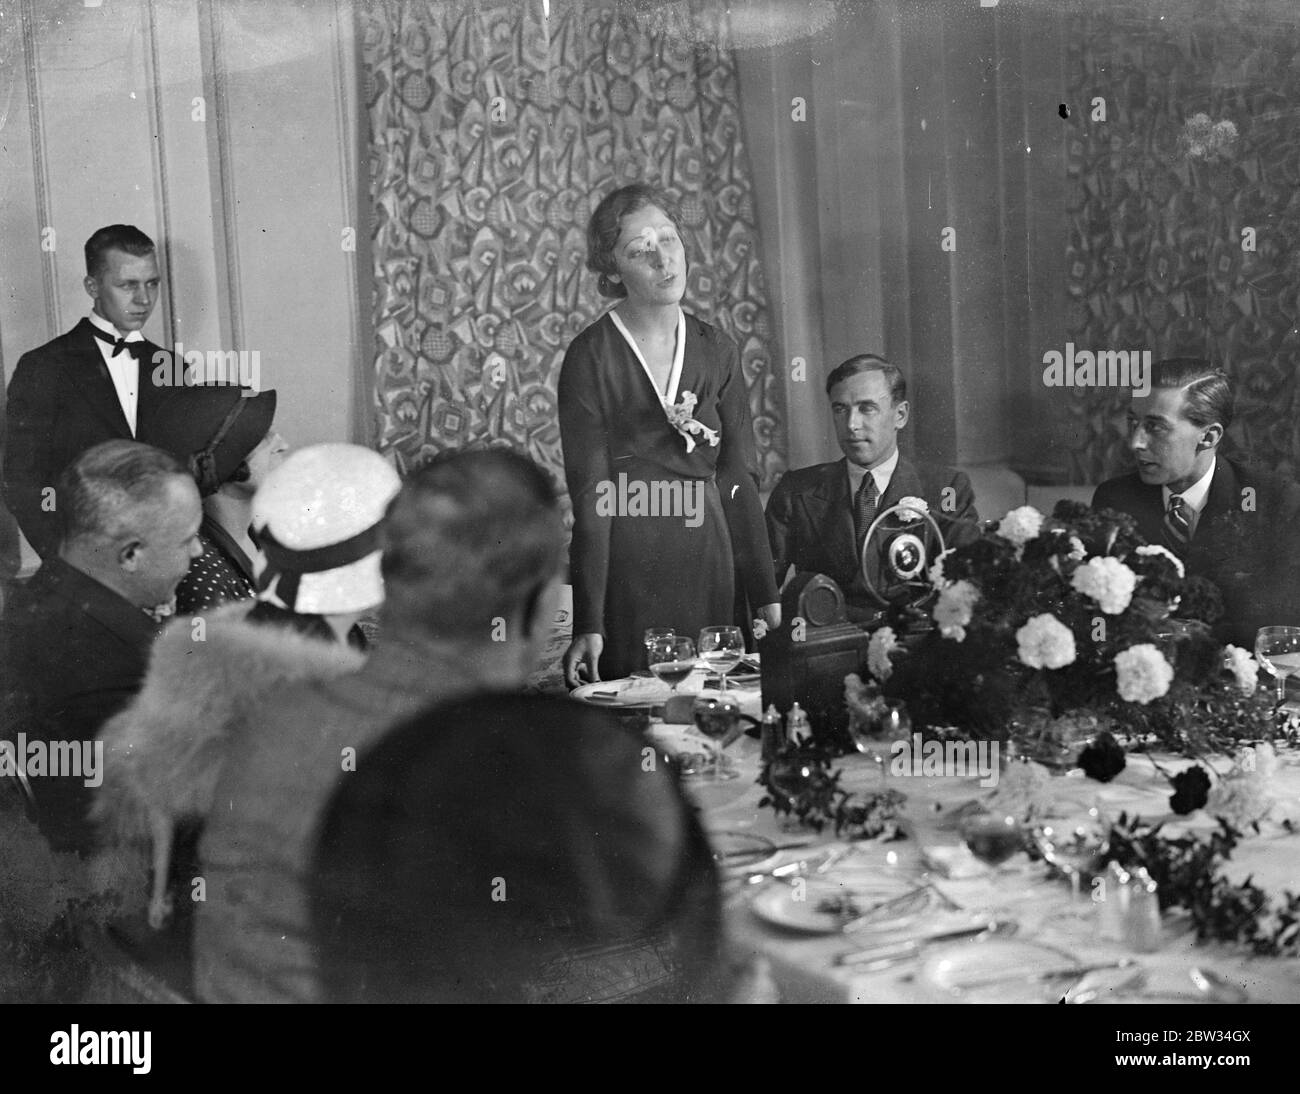 Amy Johnson et J A Mollison se marient à St Georges . Mlle Amy Johnson , la femme collier , et M. J A Mollison , détenteur du record aérien de Londres à Cape Town , se trouvaient à l'église St Georges , à Hanover Square , à Londres . La mariée donnant le discours . 29 juillet 1932 Banque D'Images